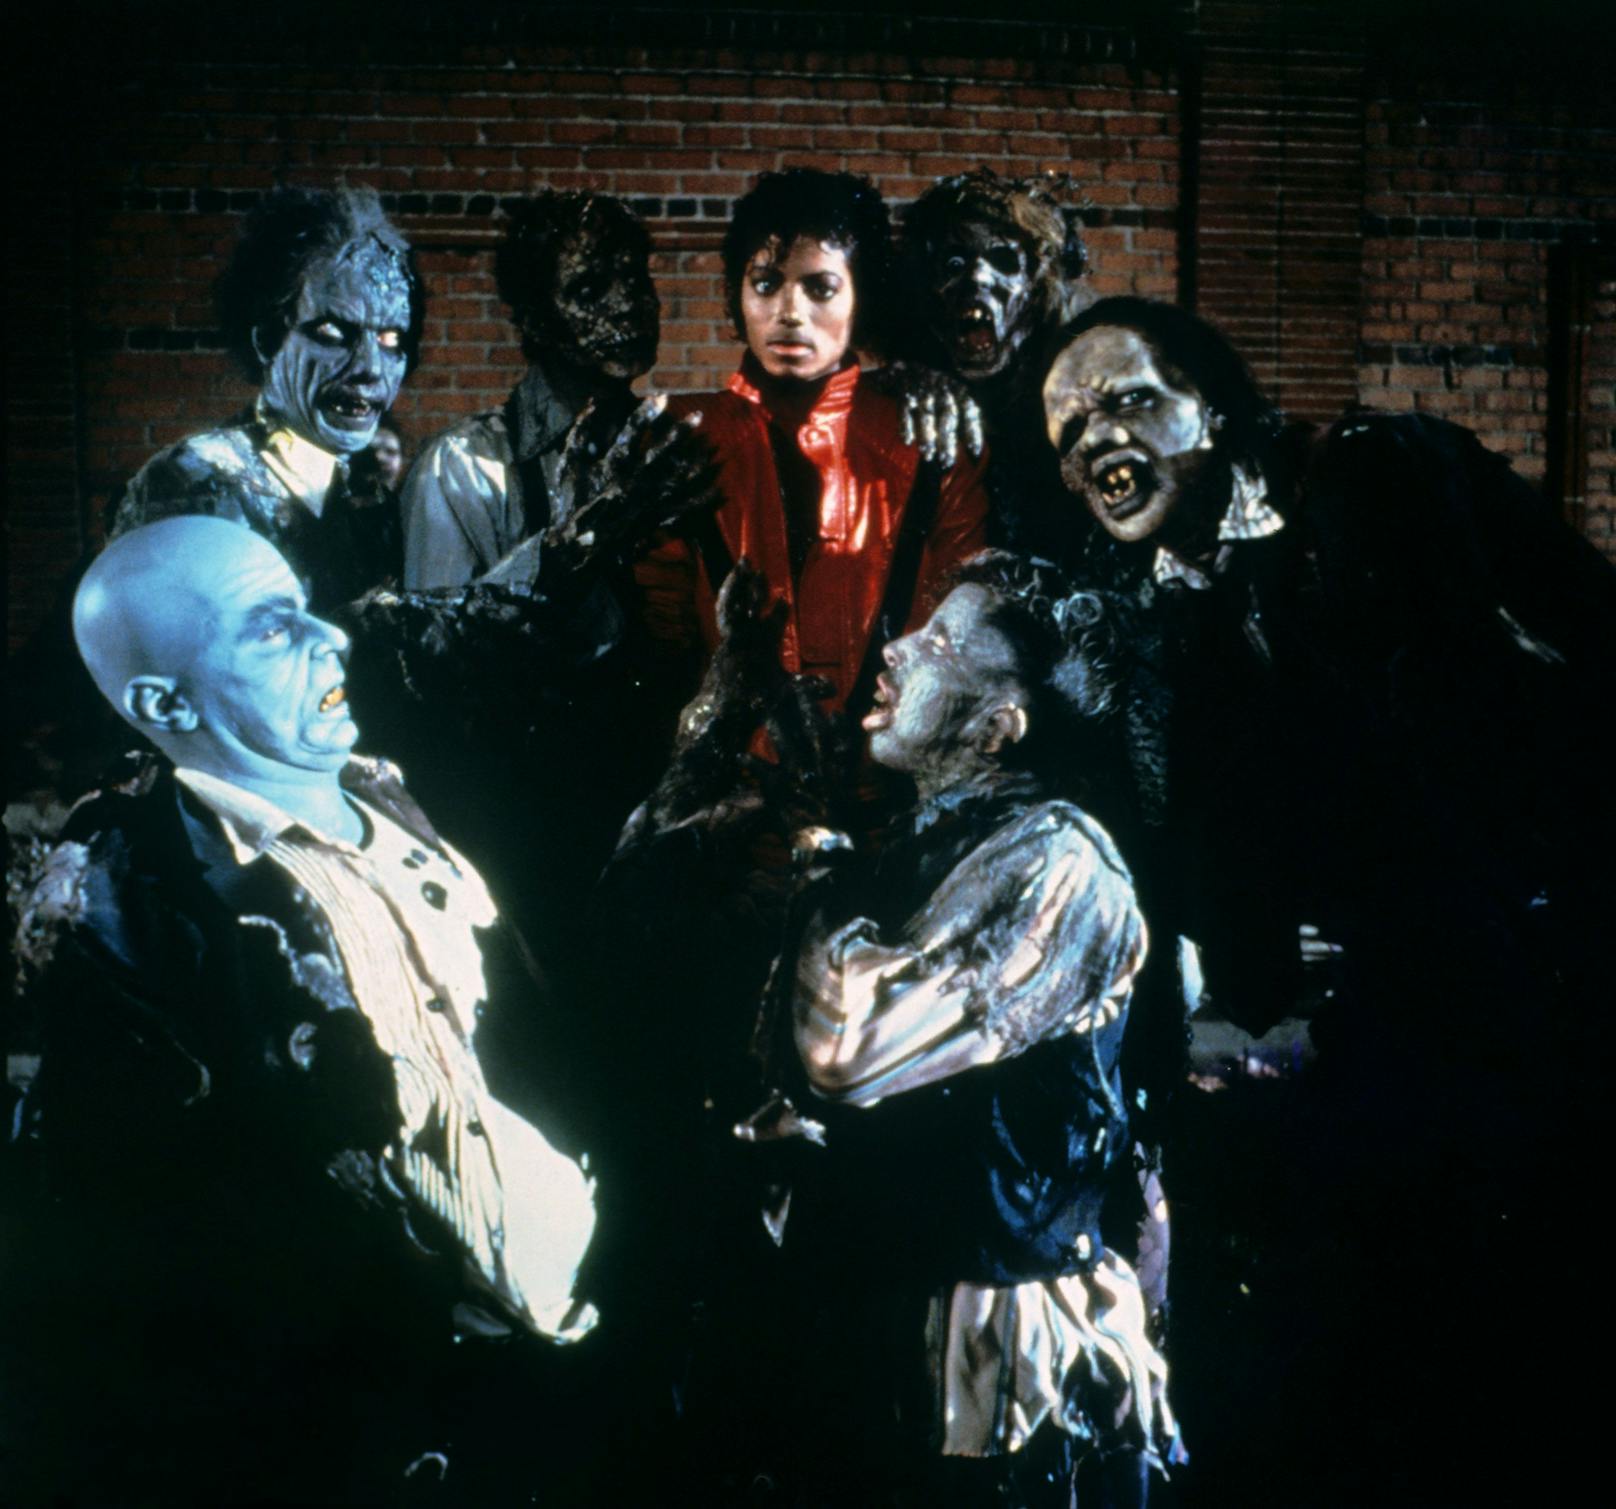 Jacksons nächstes Album war "Thriller" von 1982, das das meistverkaufte Album aller Zeiten wurde. Bis heute zählt besonders das Musikvideo zur gleichnamigen Single als legendär.